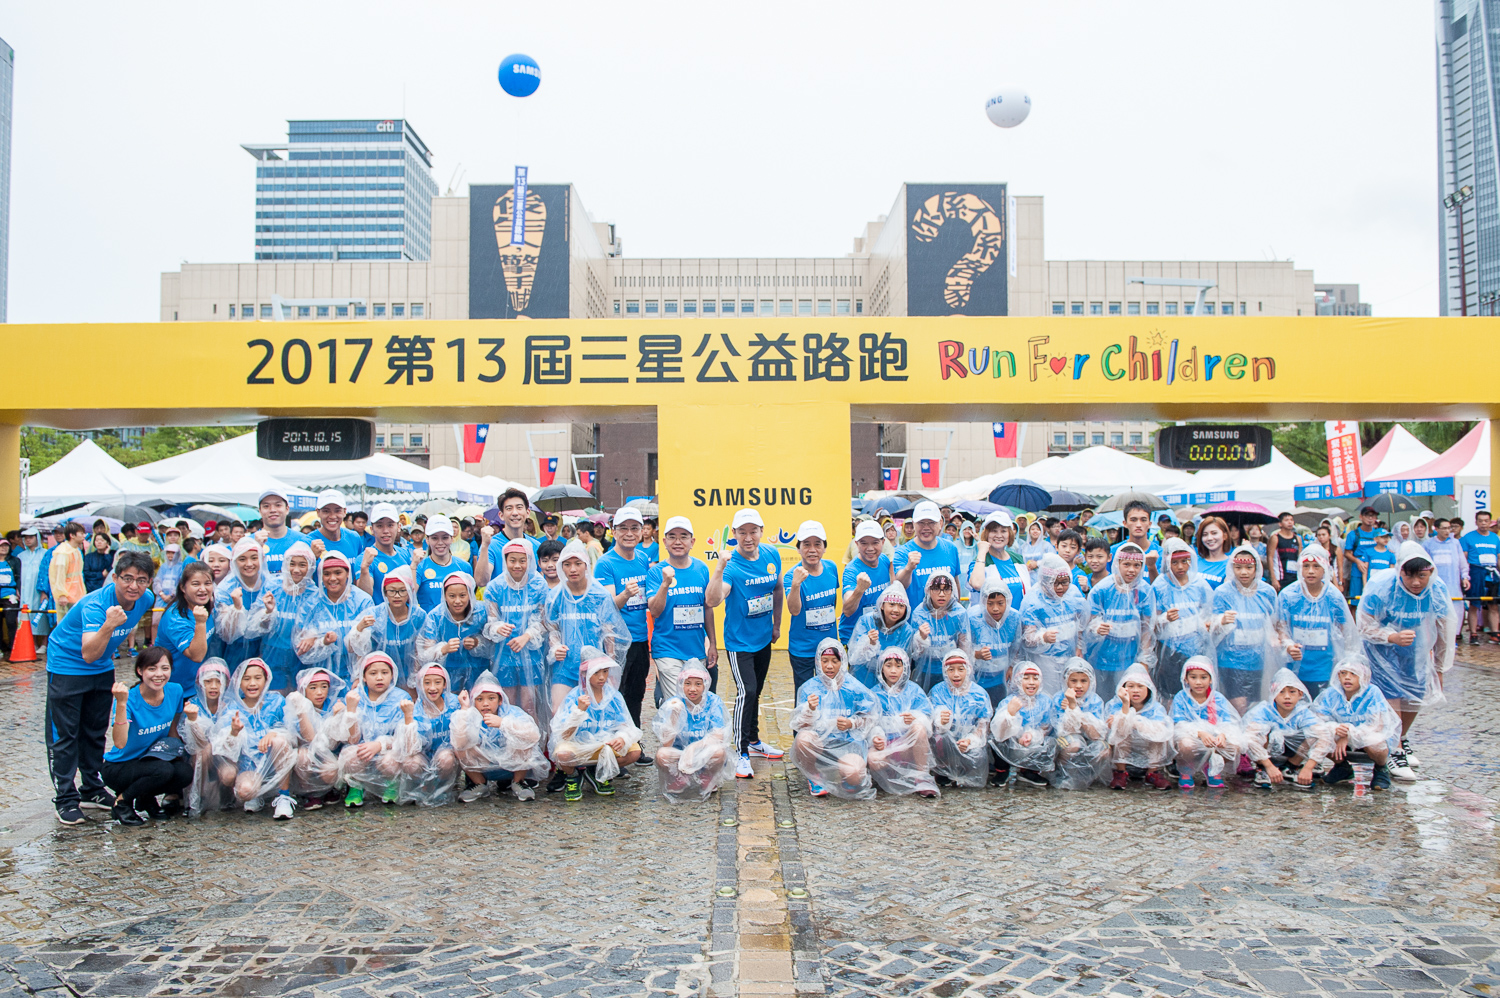 台灣最美的公益路跑 跑出最美好的風景2017第13屆三星公益路跑run For Children 新聞稿自助吧 Newsbuffet